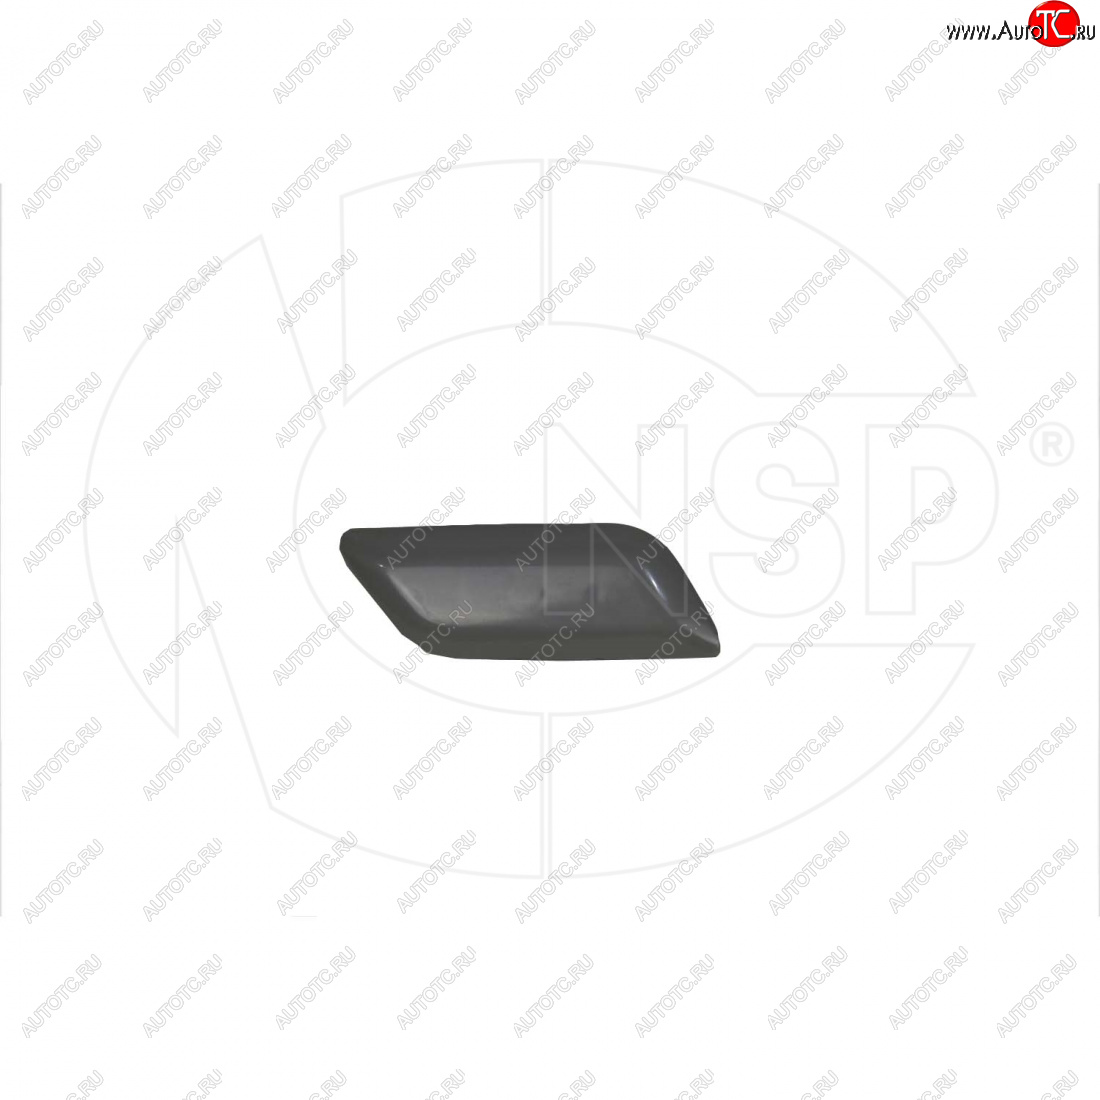 299 р. Крышка форсунки омывателя правой фары NSP Toyota Camry XV55 1-ый рестайлинг (2014-2017) (Неокрашенная)